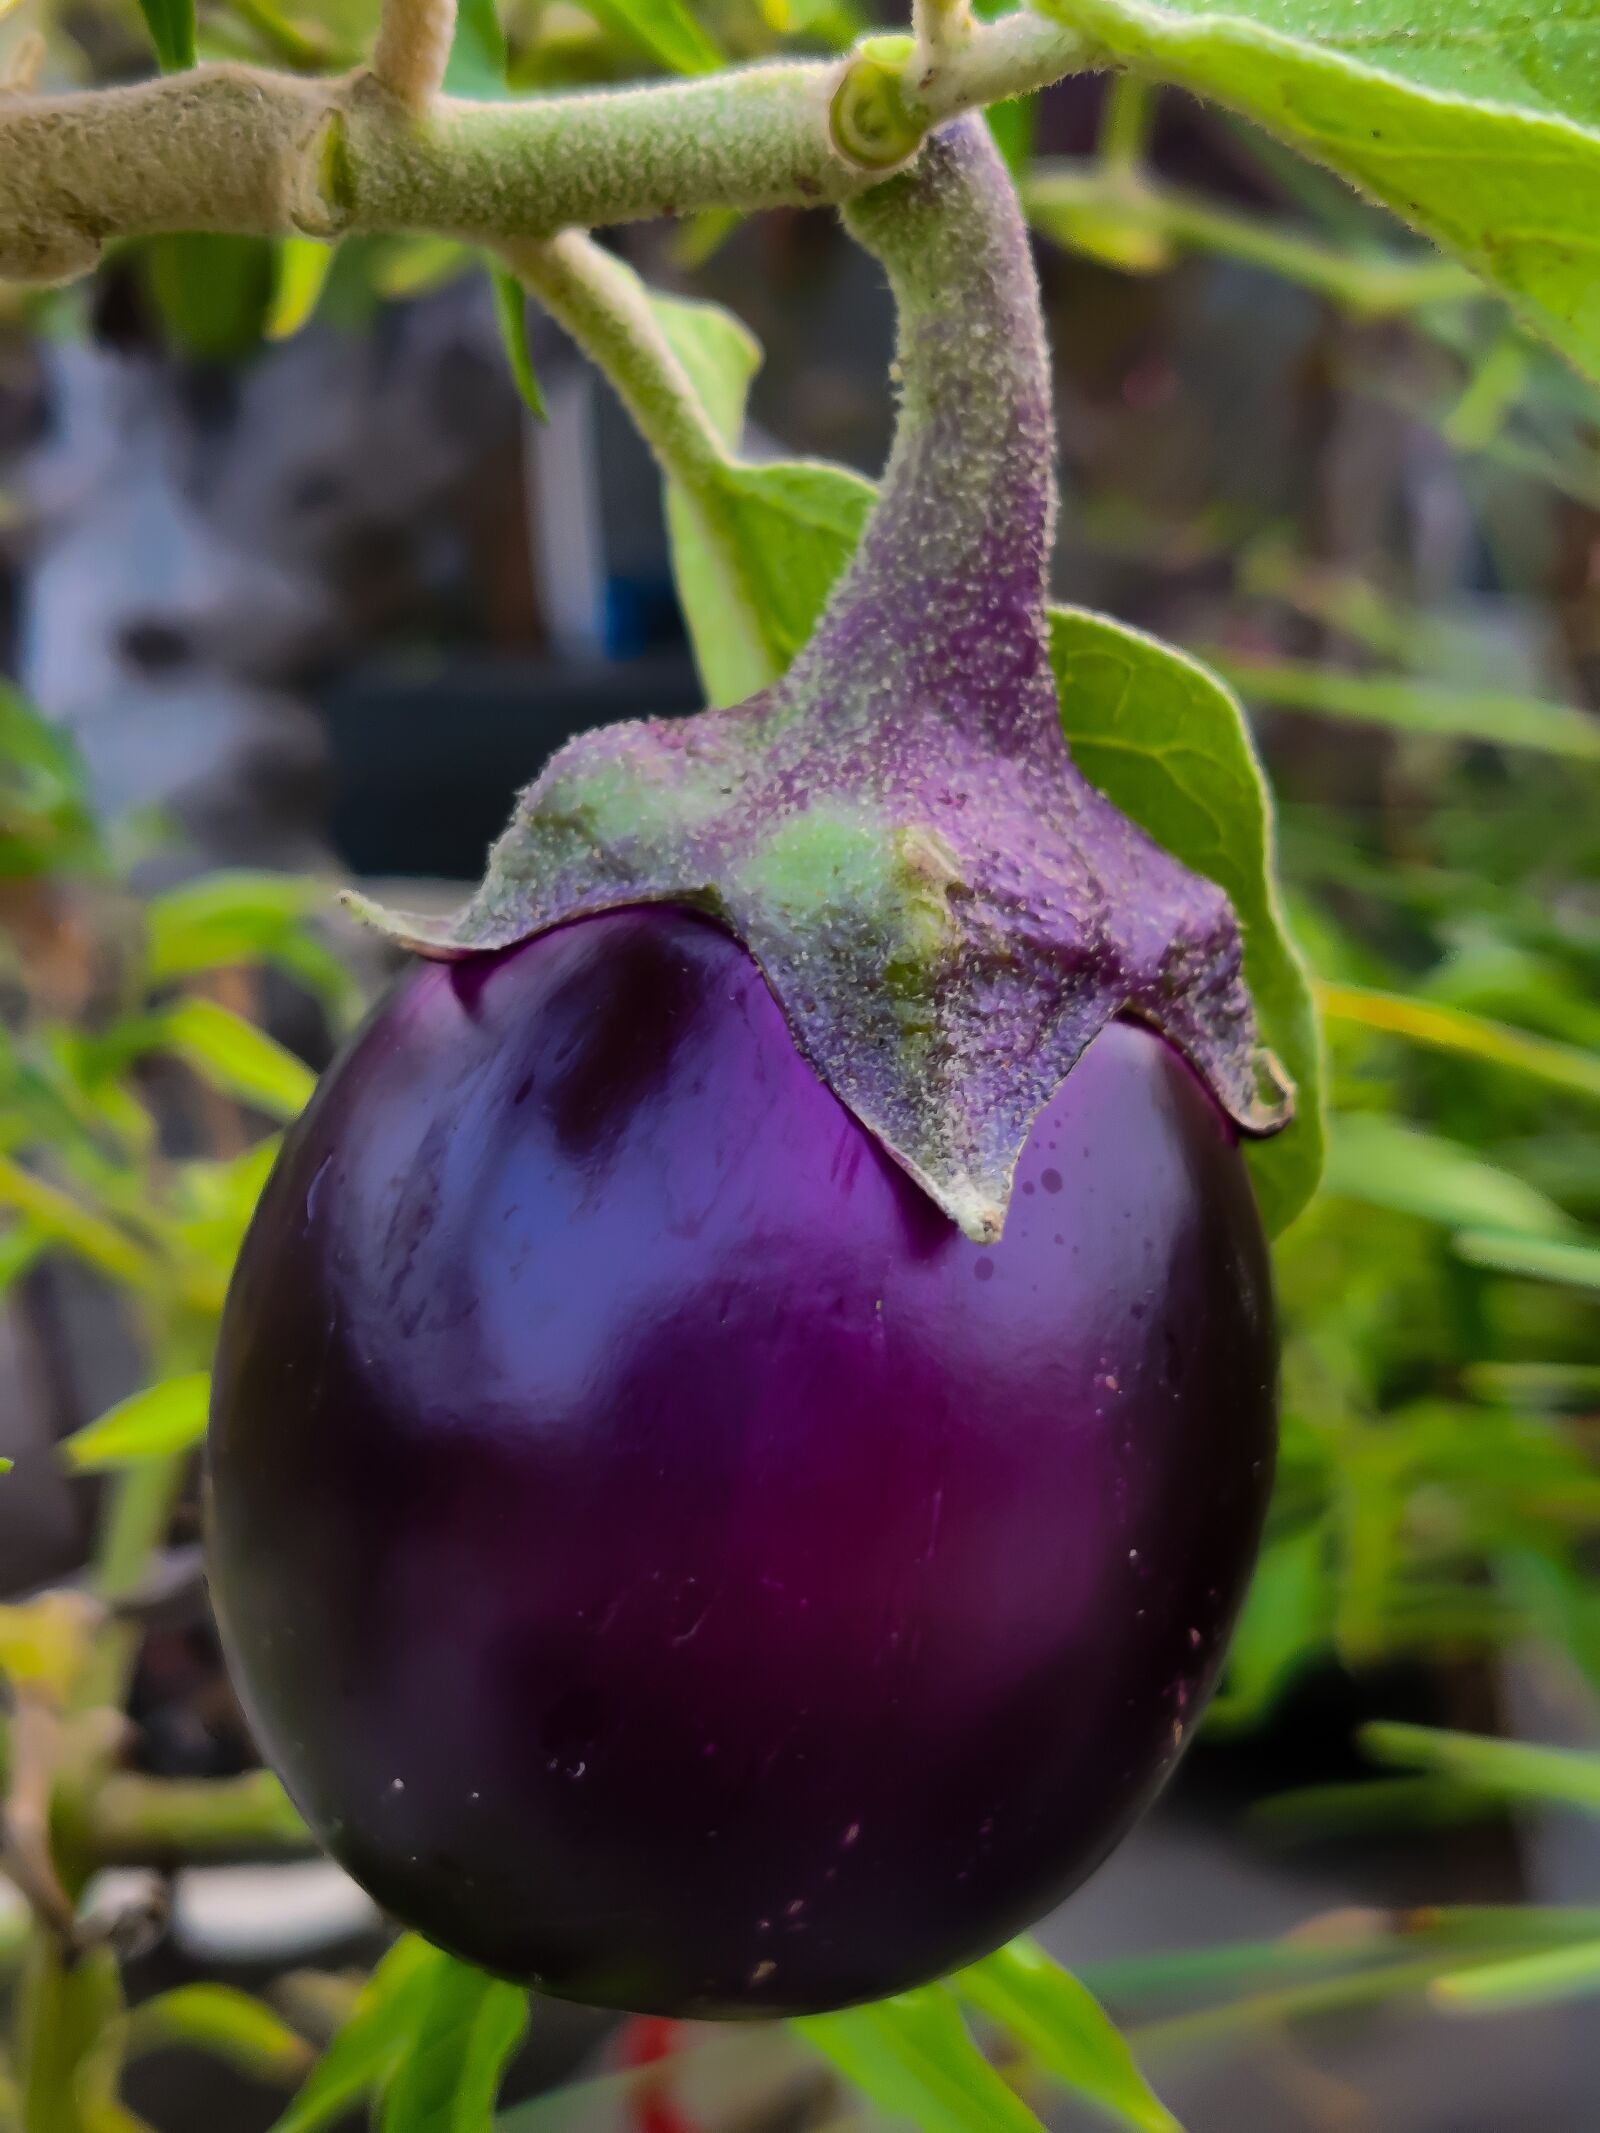 OnePlus AC2001 sample photo. Brinjal, eggplant, fruit photography